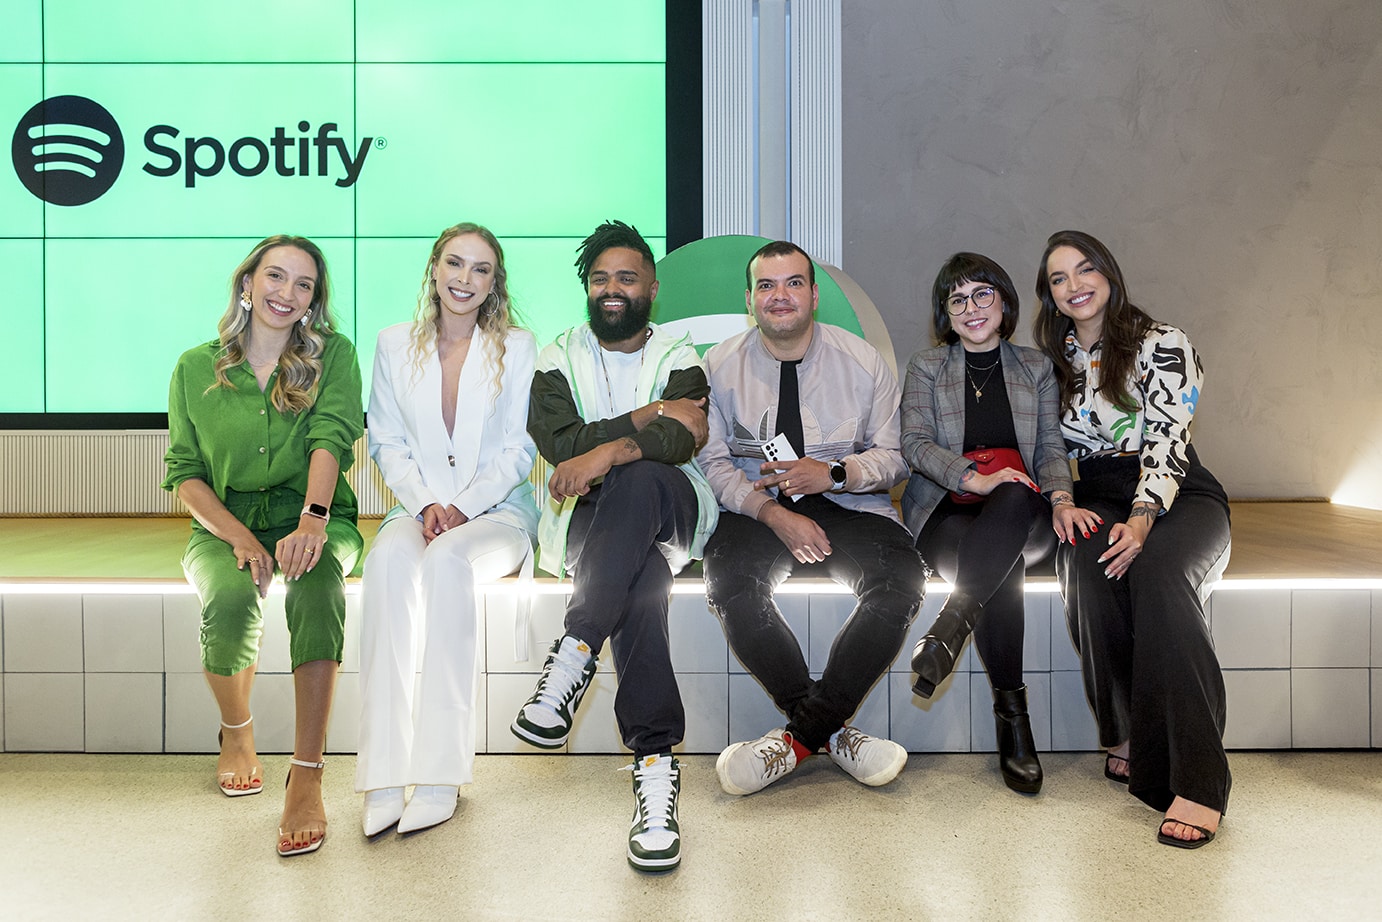 Spotify traz os videocasts para a plataforma no Brasil